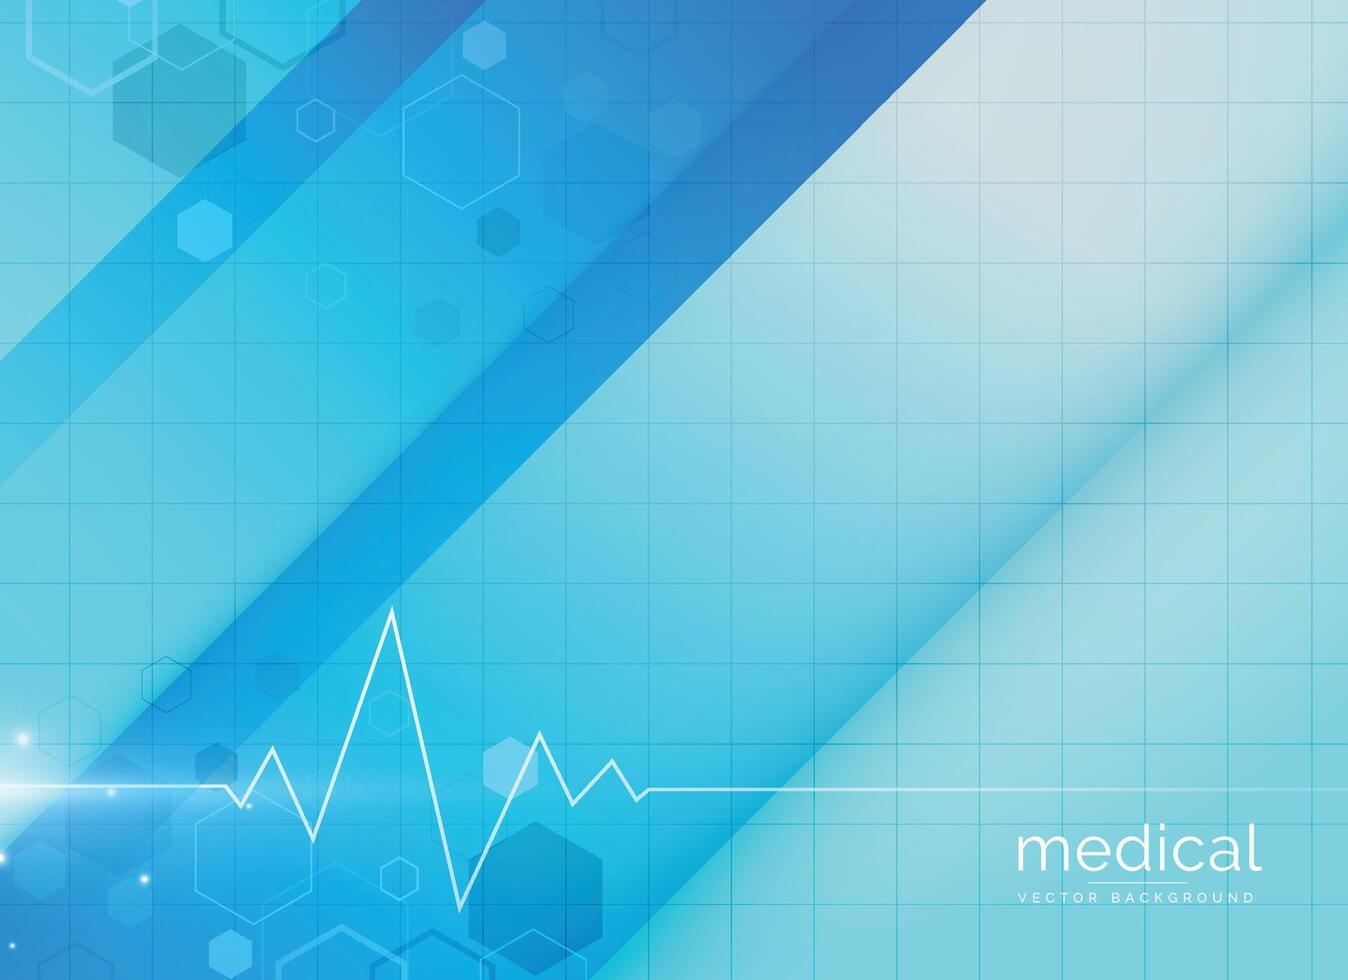 blue medical background design illustration vector